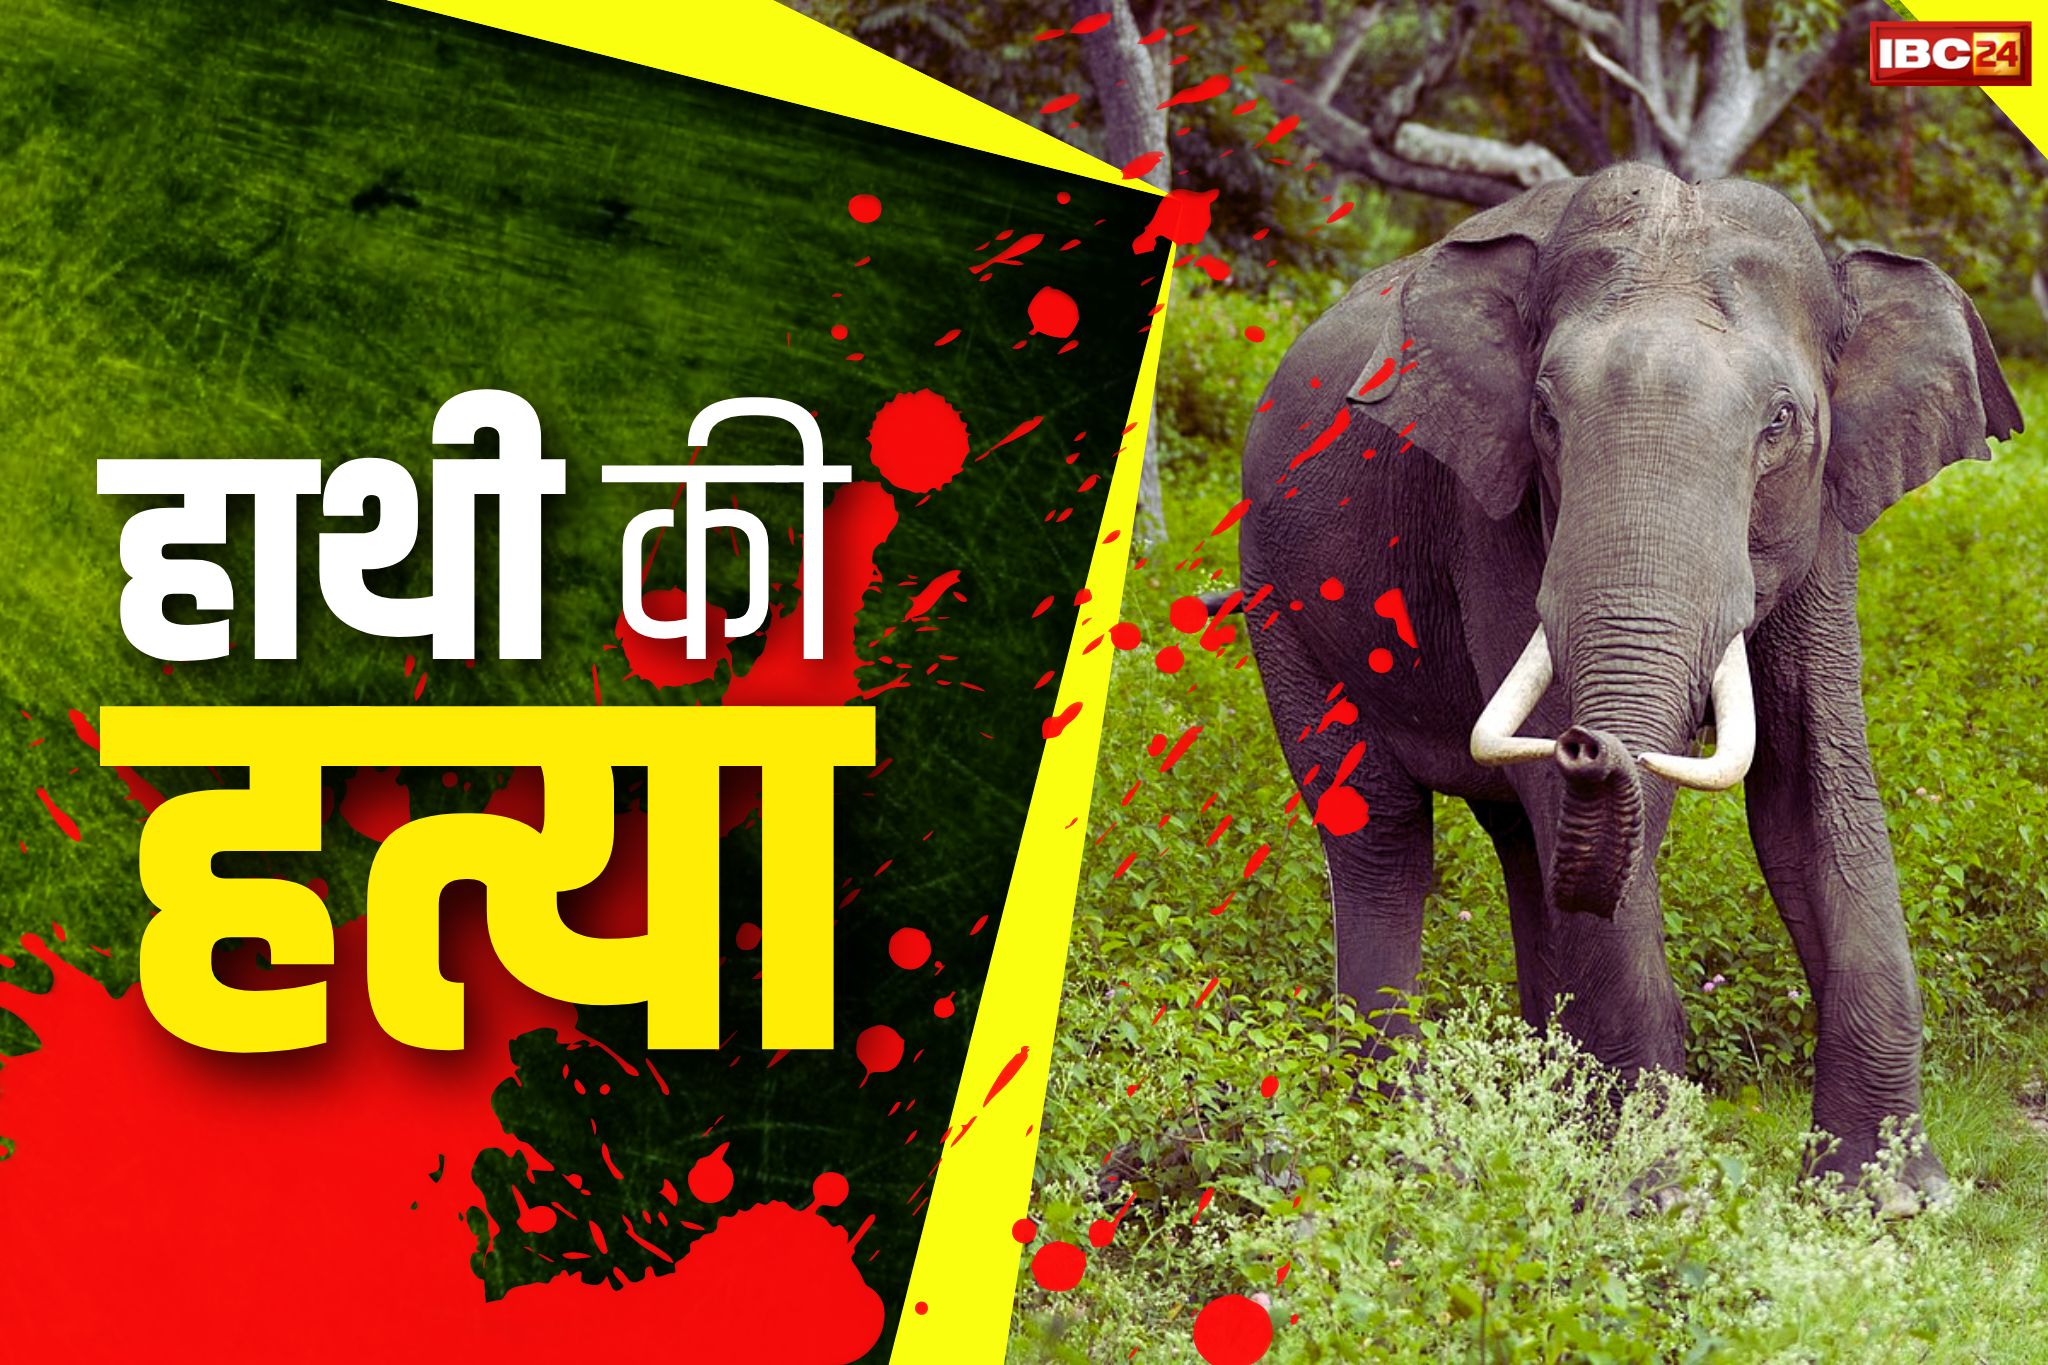 Surajpur Crime News: करंट देकर मादा हाथी की हत्या.. वारदात को छिपाने लाश को टुकड़ो में काटा फिर दफनाया, 2 अरेस्ट